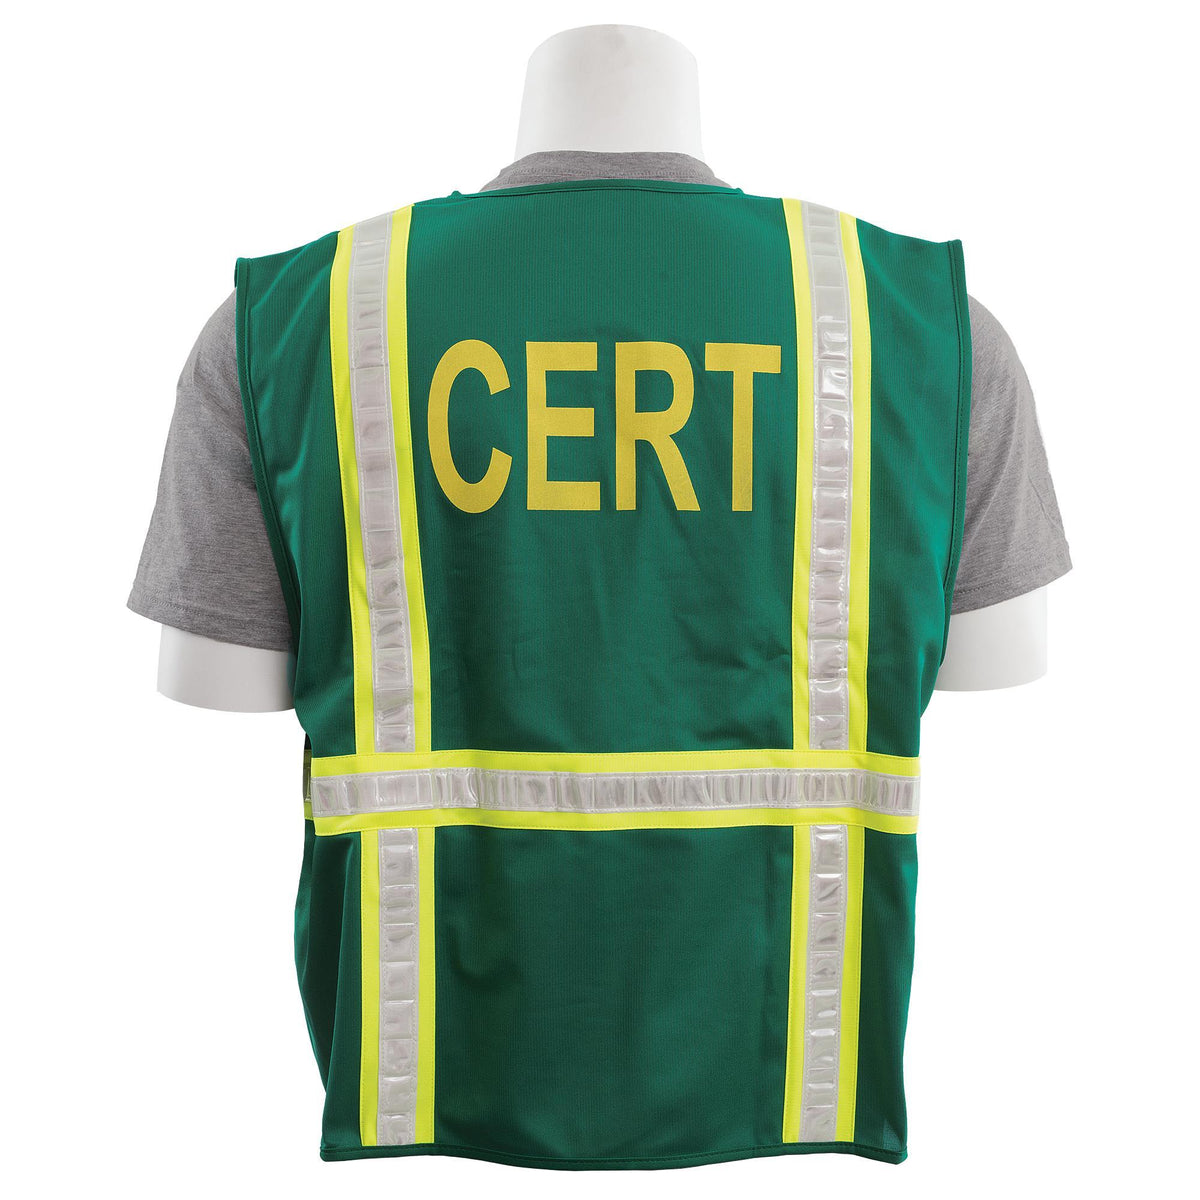 S813CERT Surveyor&#39;s Safety Vest - Non-ANSI 1PC